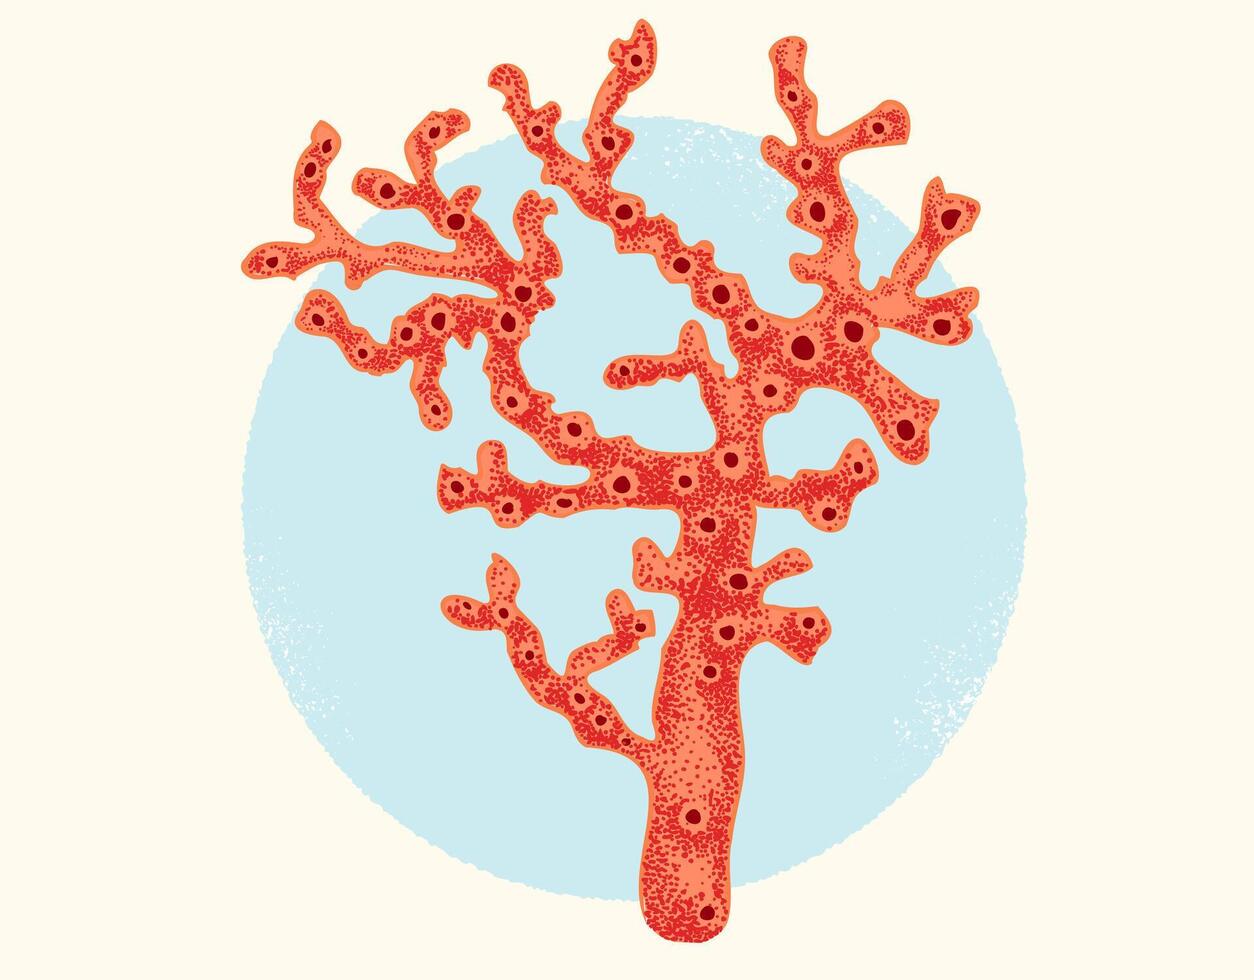 årgång illustration av röd korall. retro affisch med röd korall på blå bakgrund. vektor